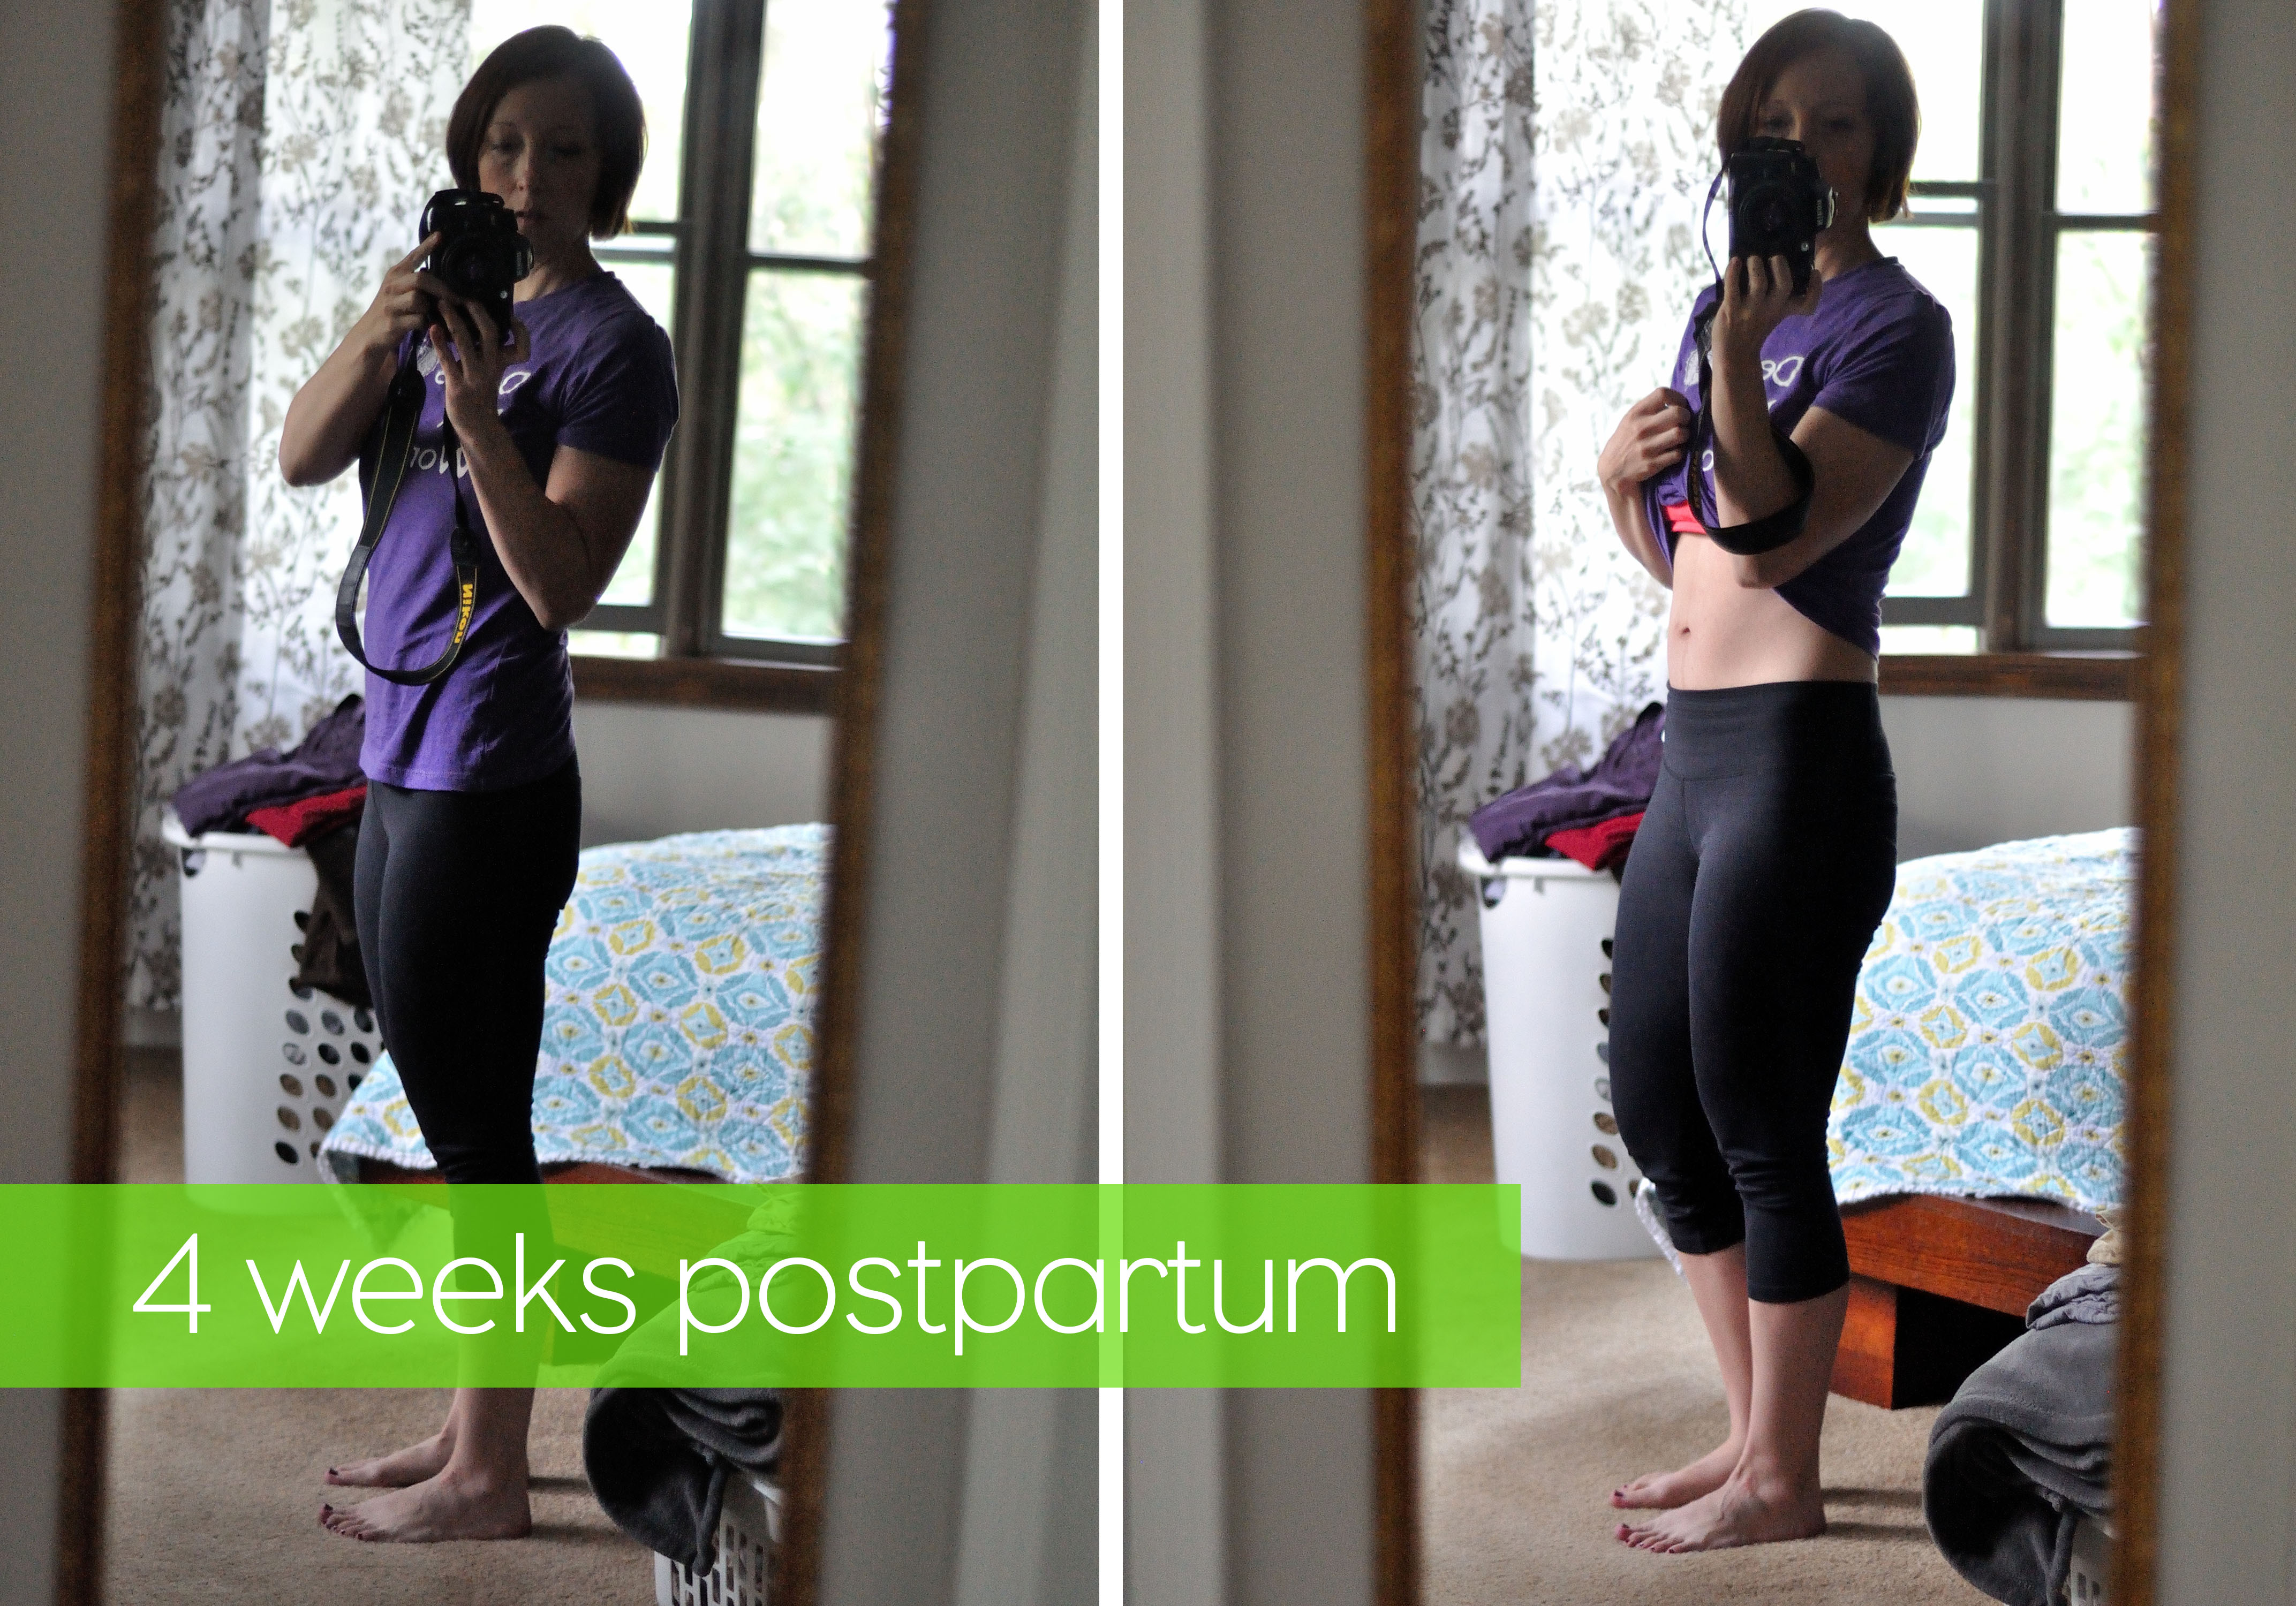 4 weeks postpartum - Kohler Created